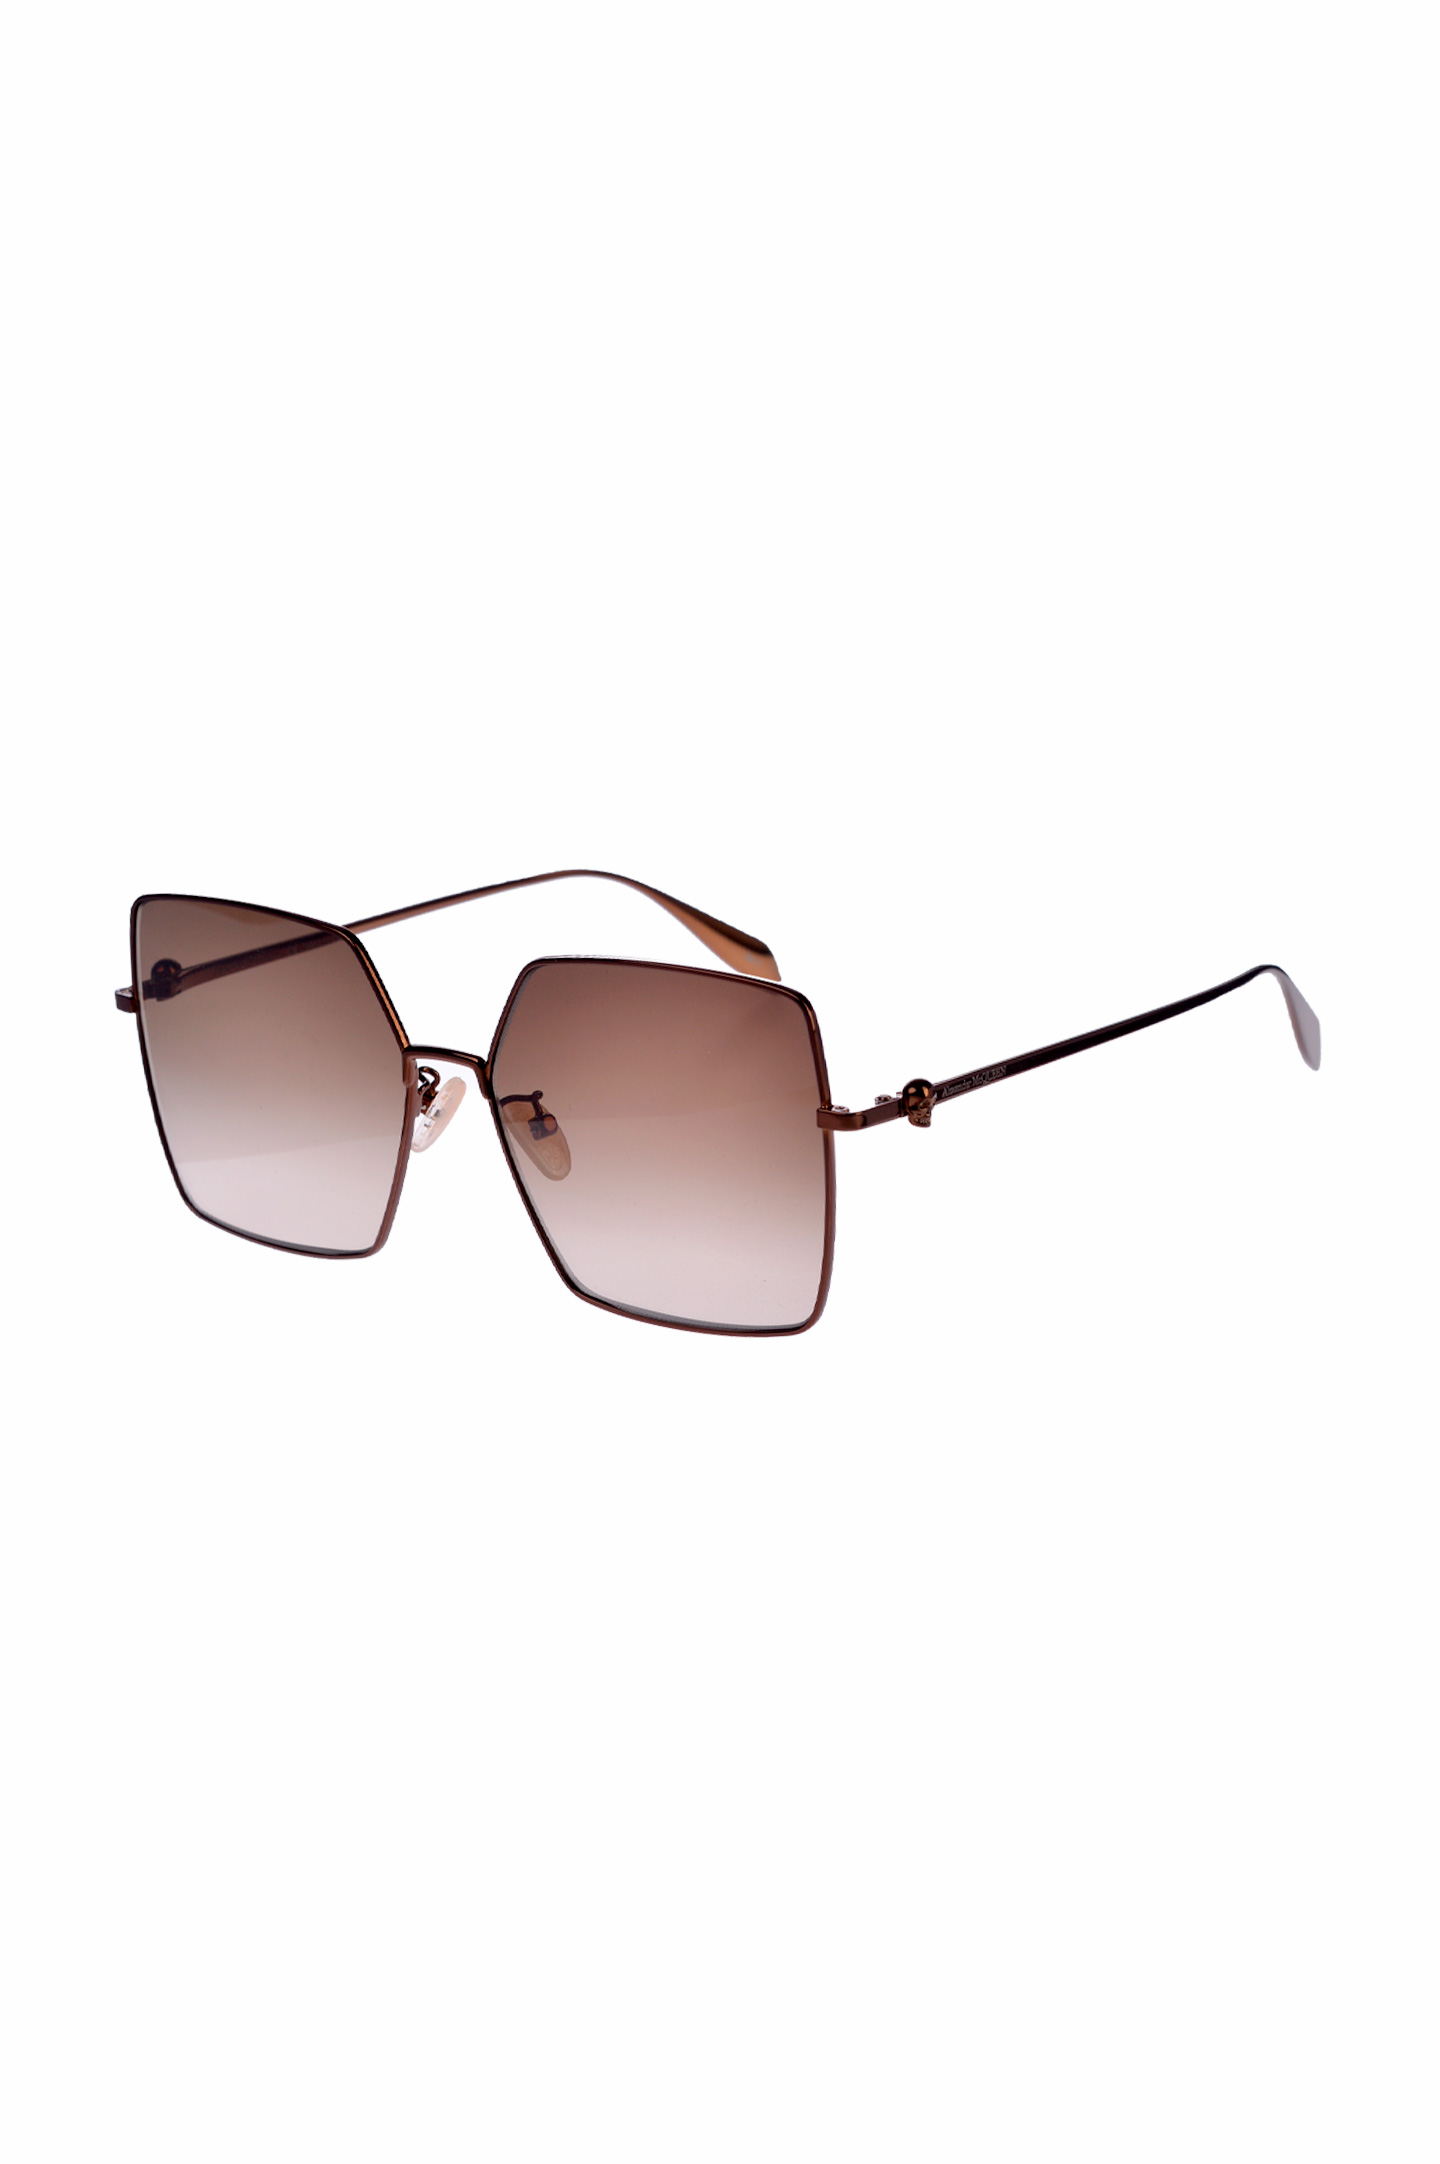 Солнцезащитные очки ALEXANDER MCQUEEN 634918 I3330, цвет: Коричневый, Женский